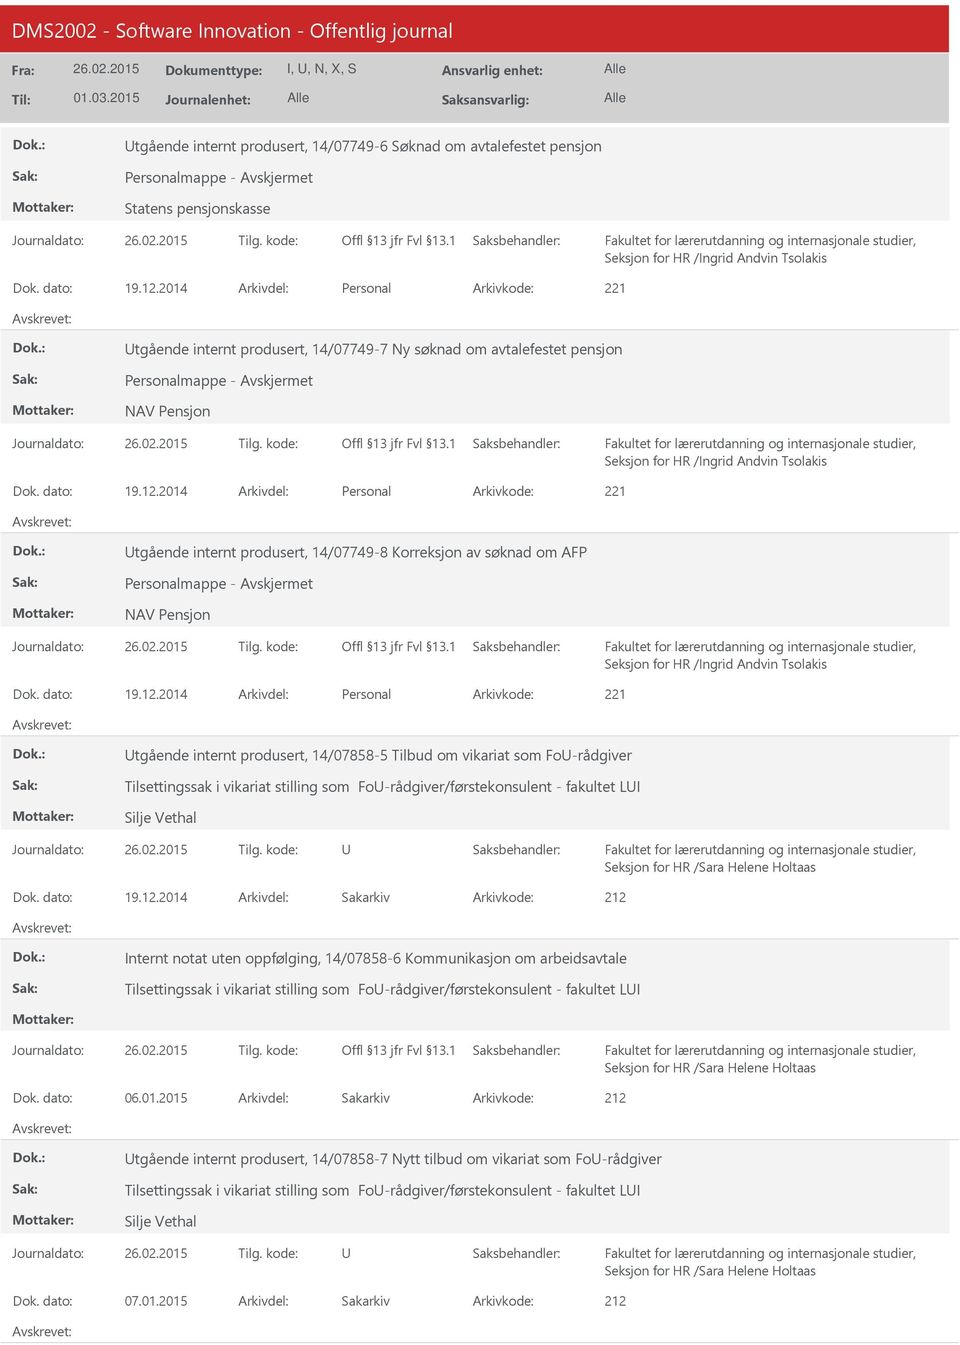 2014 Arkivdel: Personal tgående internt produsert, 14/07749-8 Korreksjon av søknad om AFP Personalmappe - NAV Pensjon Seksjon for HR /Ingrid Andvin Tsolakis Dok. dato: 19.12.